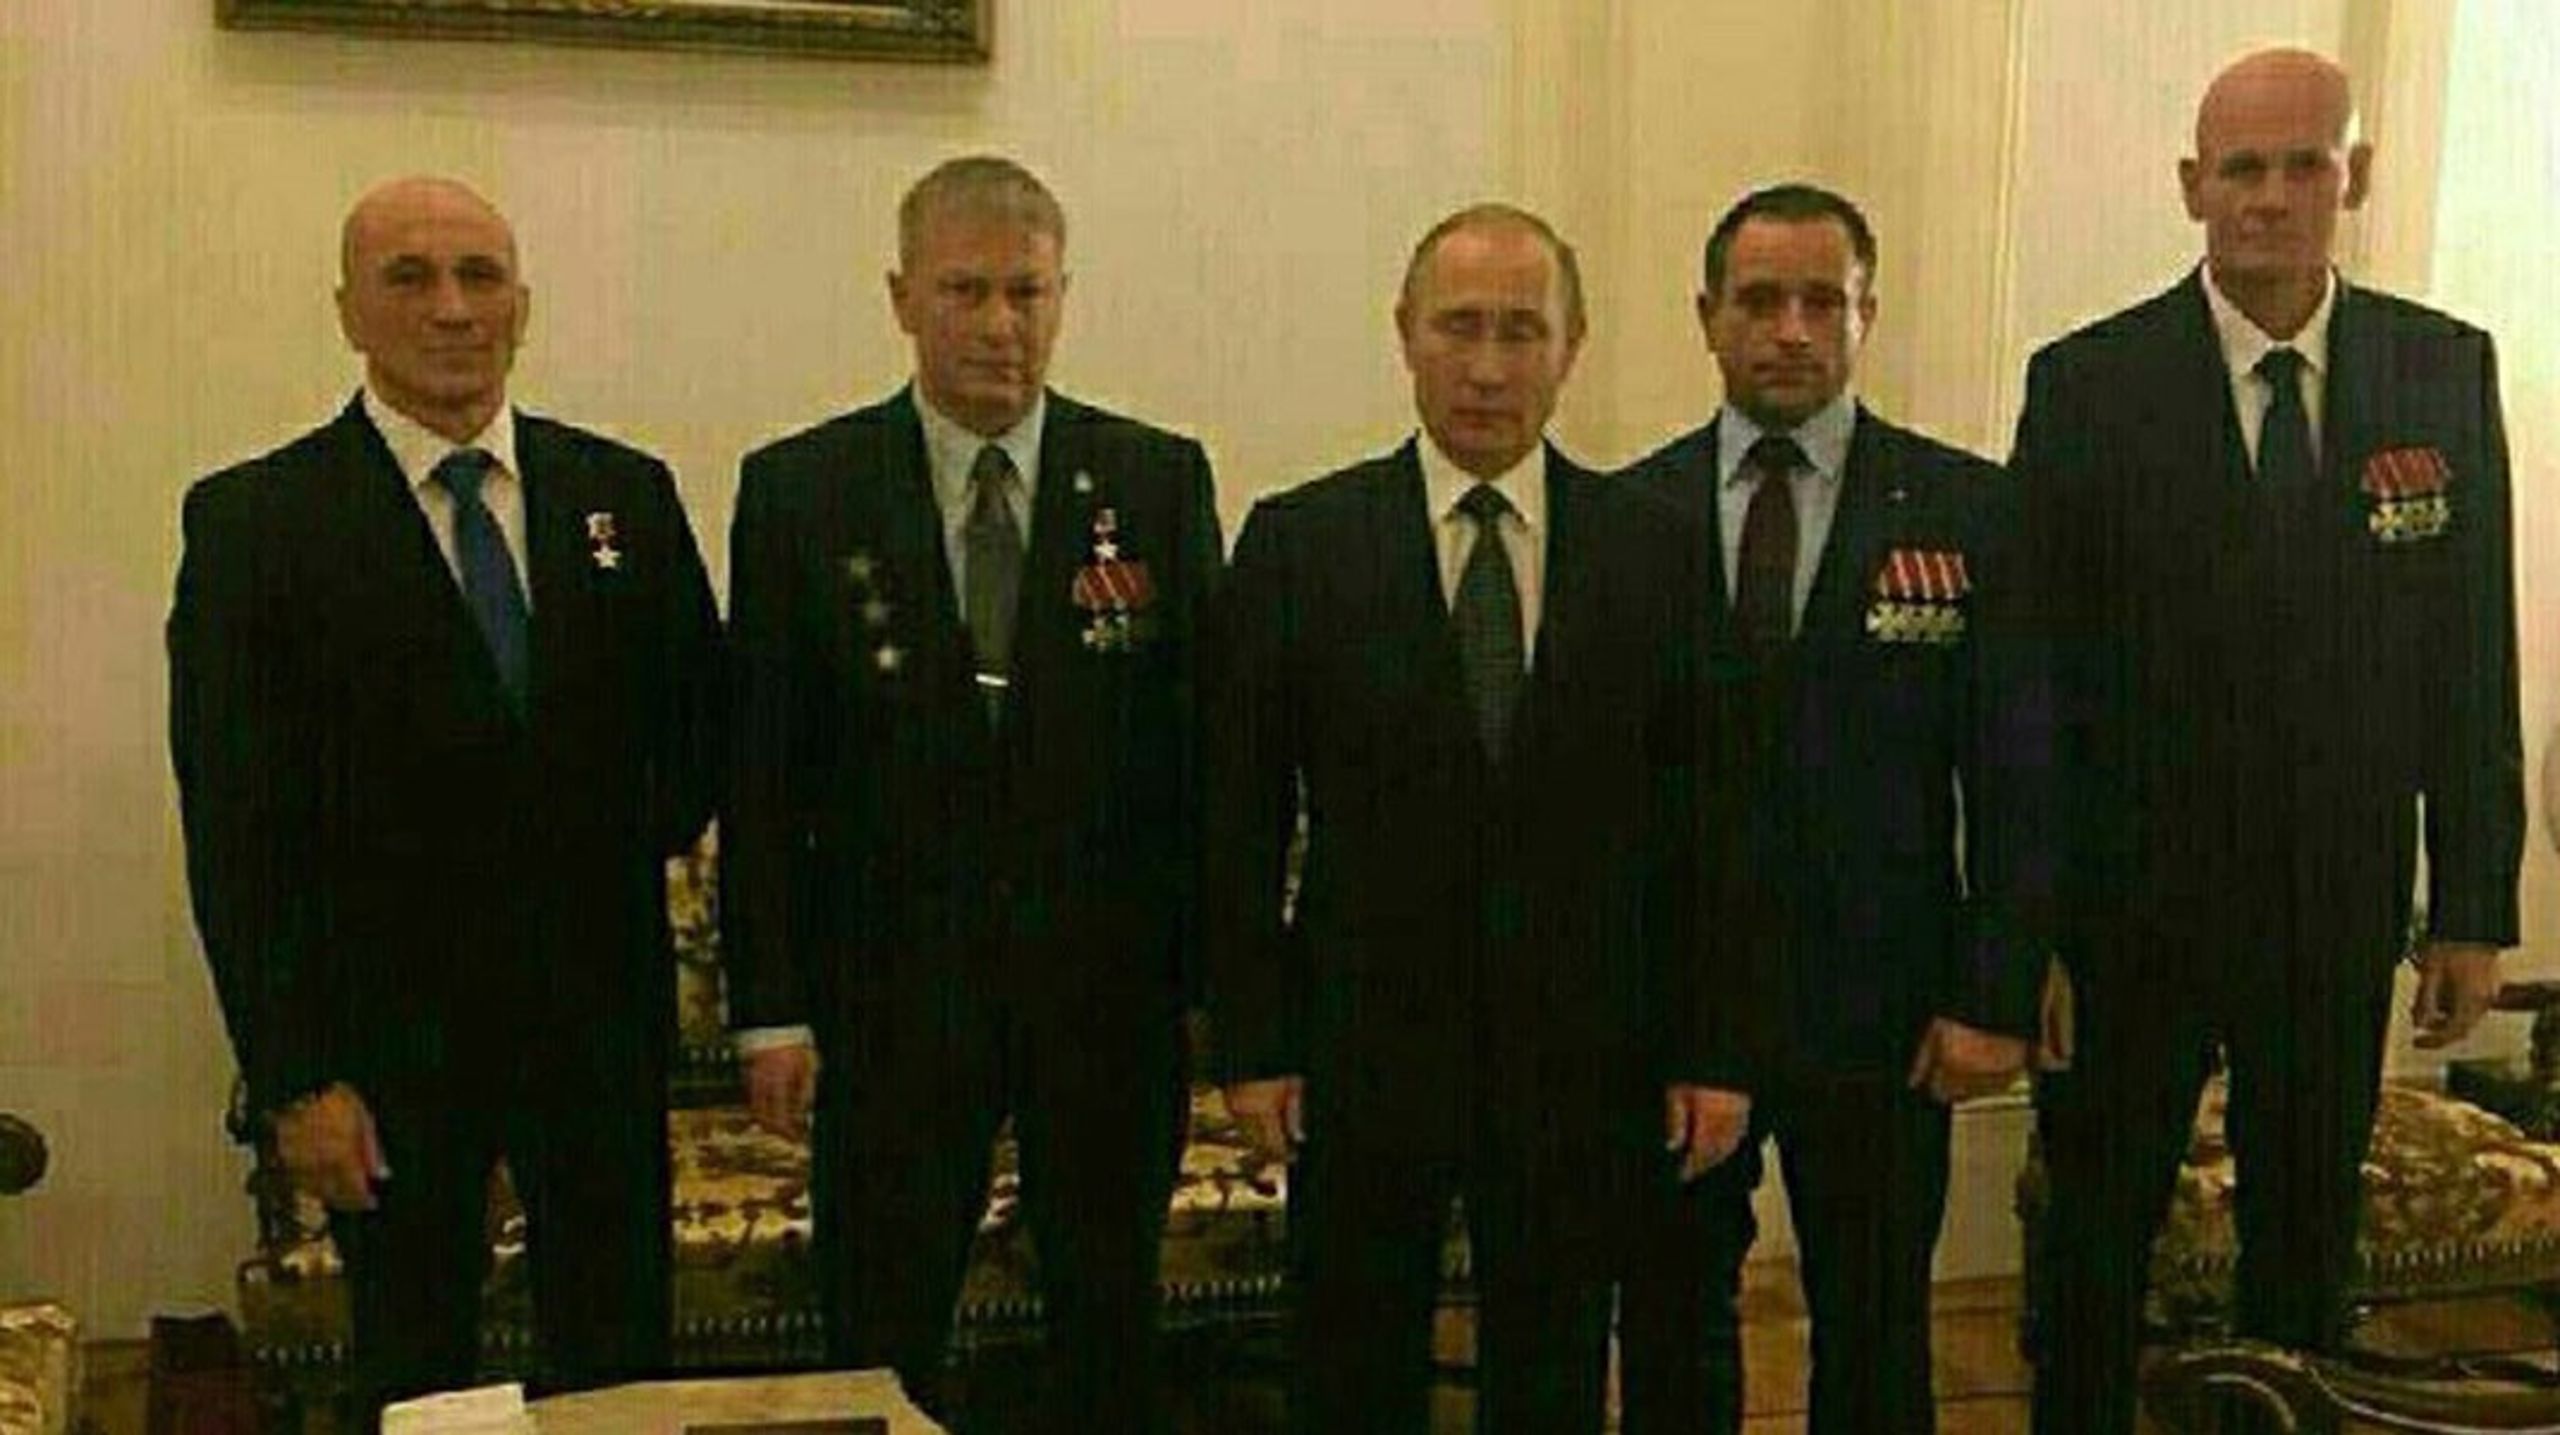 <div>Vladimir Putin fotograferet med to top folk fra Wagner Gruppen i 2016. Oberst Andrey Troshev (anden fra venstre), der har modtaget den prestigiøse orden 'Helt for Rusland' og en 'Gylden Stjerne' for sin indsats som 'frivillig i Syrien'. Yderst til højre&nbsp; oberst Dmitry Utkin, iført fire tapperhedsordrer. Verificeret af uafhængige facttjekkere fra&nbsp;Bellingcat.<br></div>